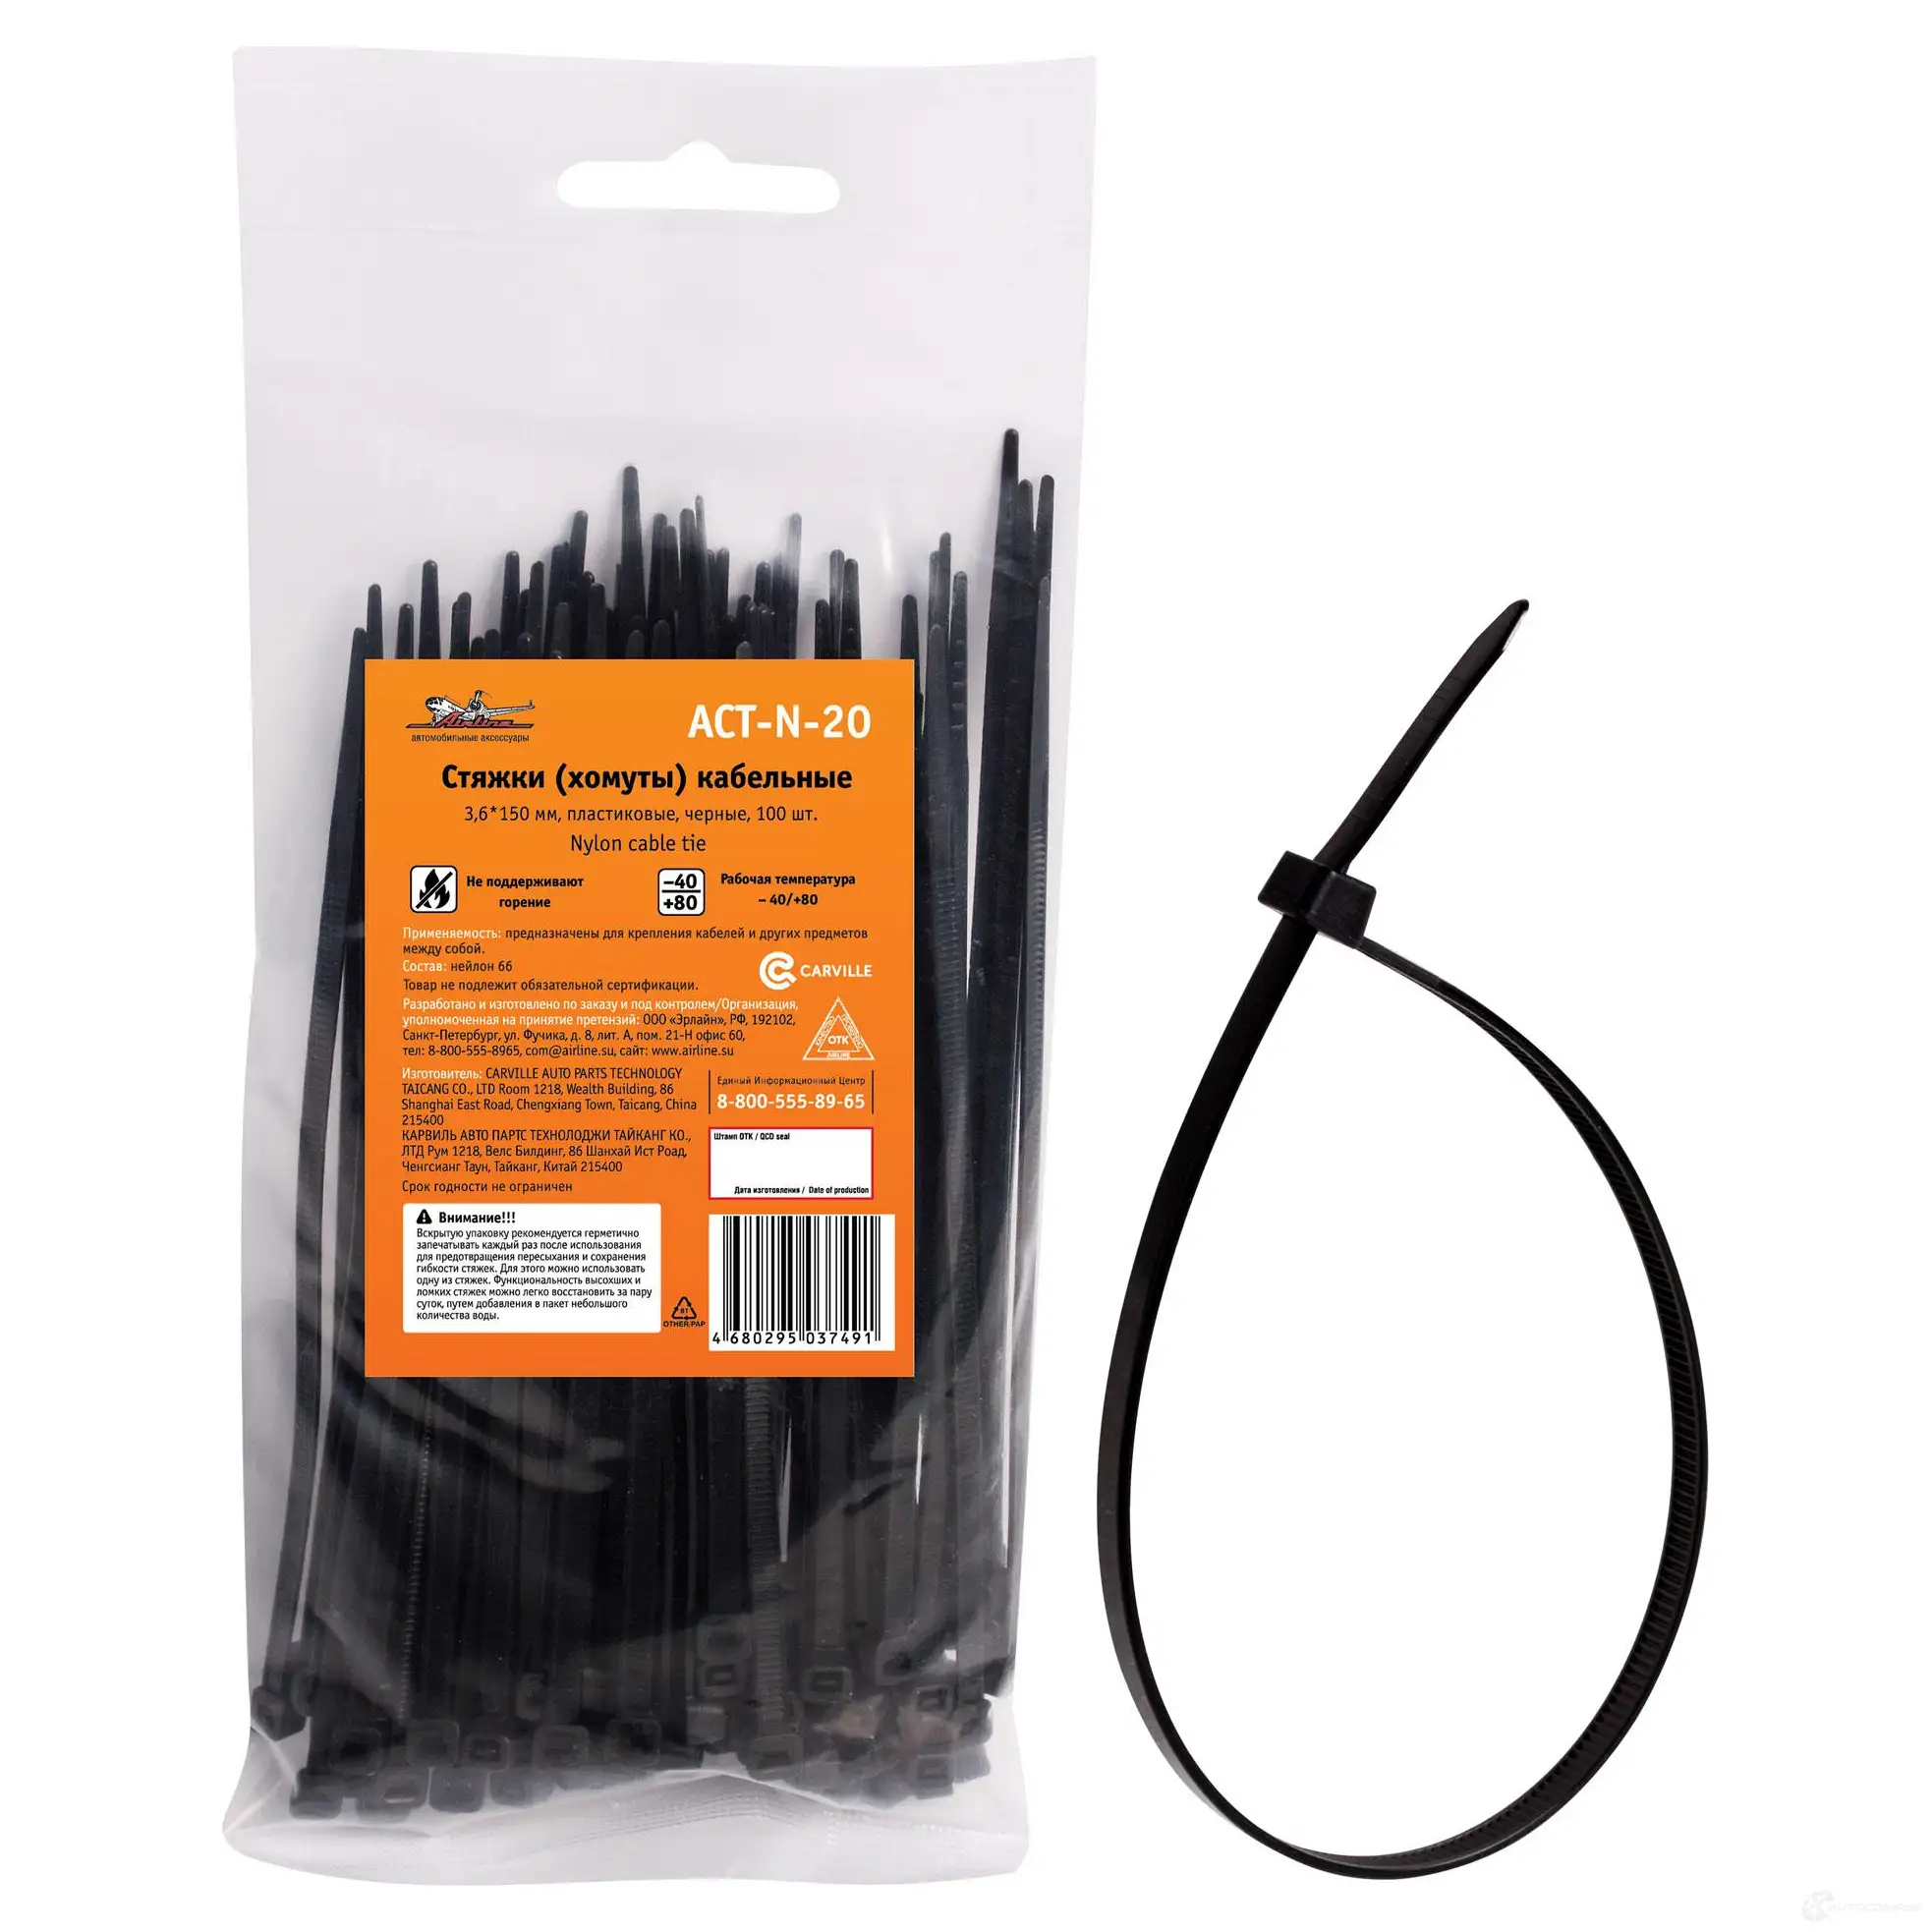 Стяжки (хомуты) кабельные 3, 6*150 мм, пластиковые, черные, 100 шт. AIRLINE actn20 1438172028 Y XUOSJ изображение 0